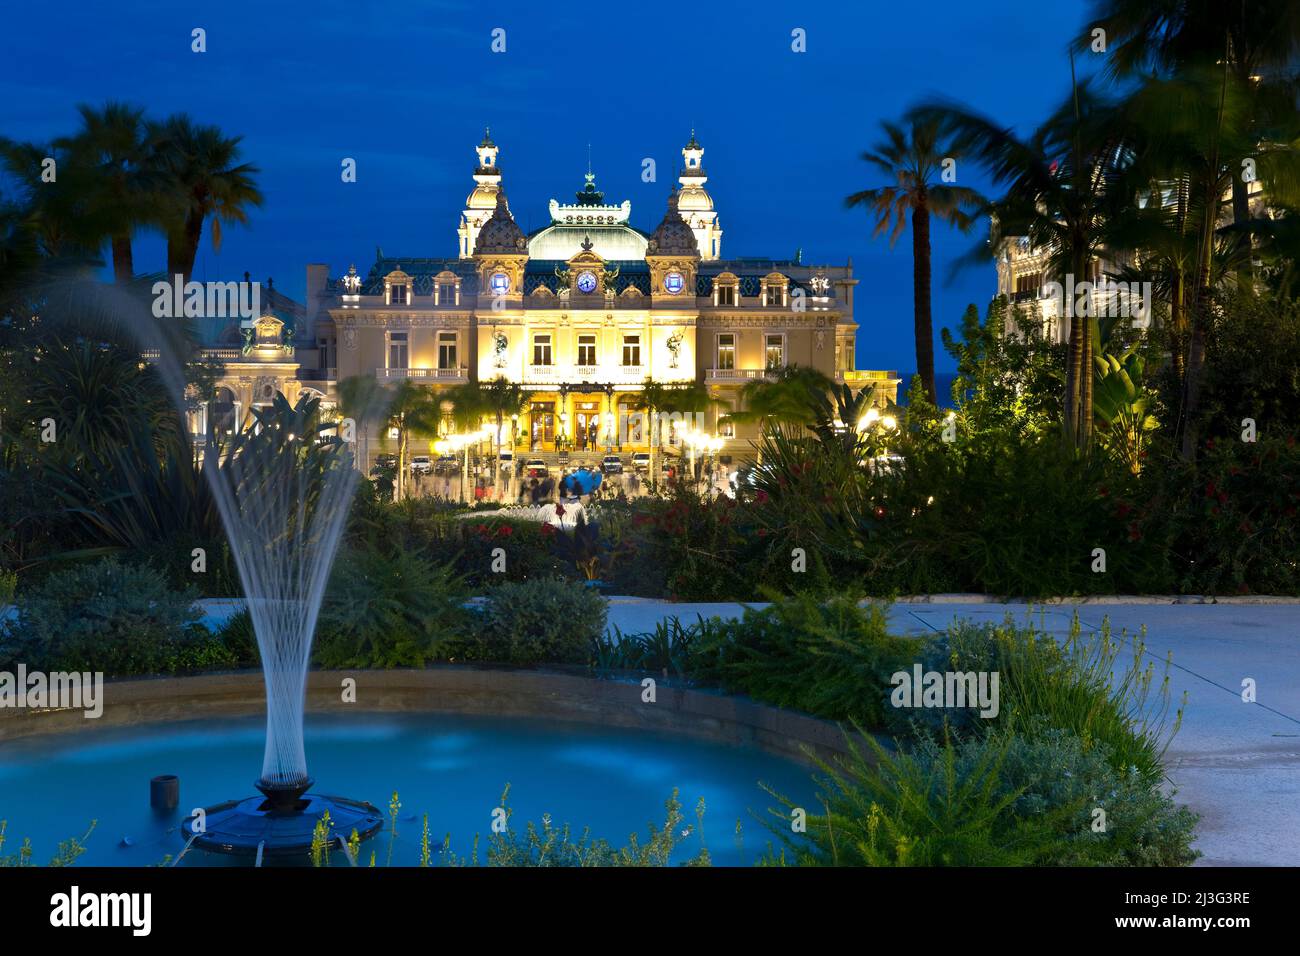 Monte Carlo Casino, Monaco Stock Photo